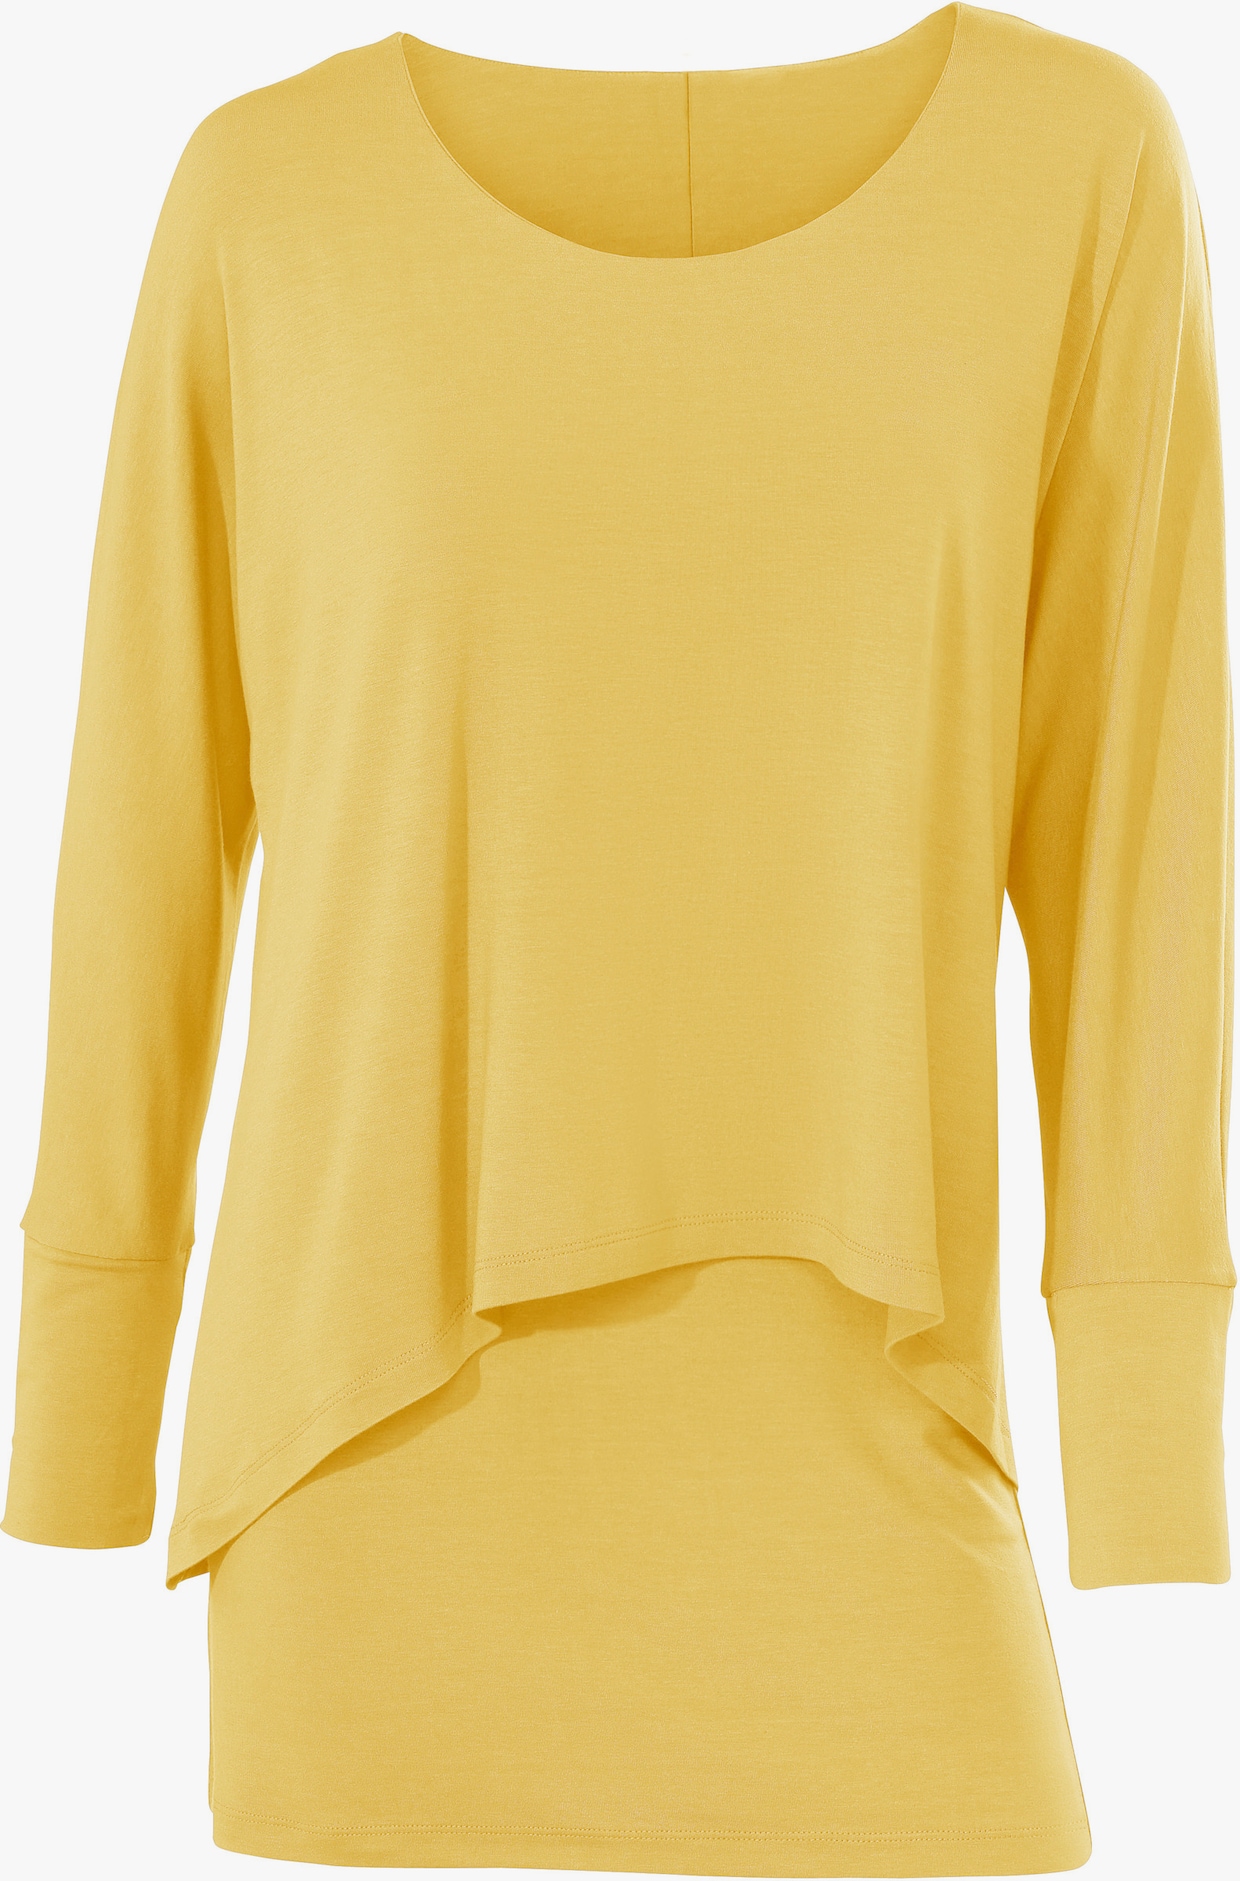 heine Rundhals-Shirt - gelb